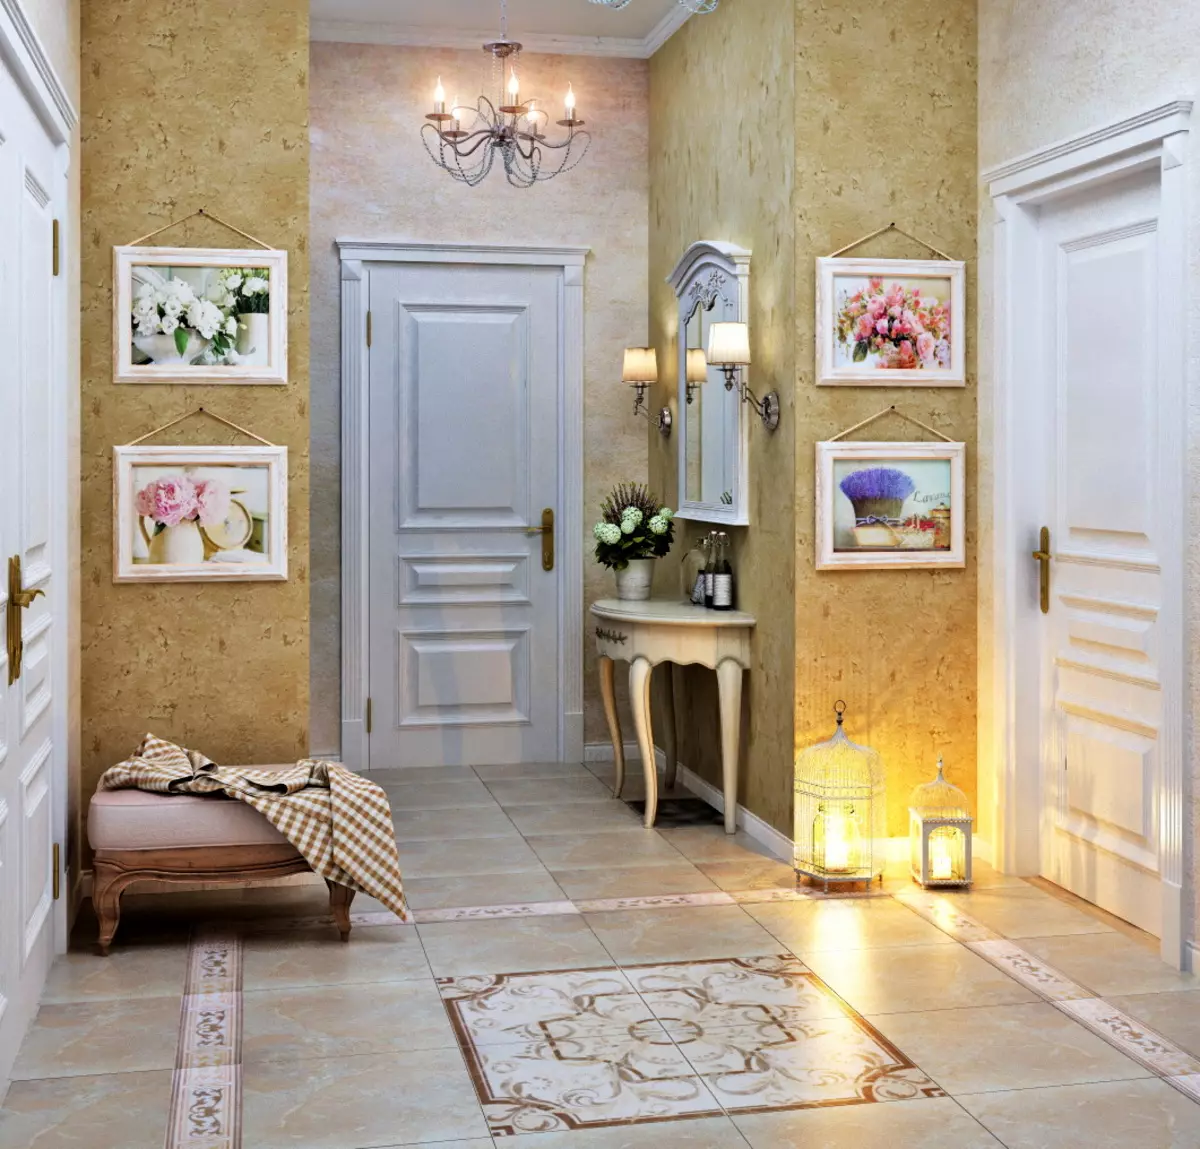 Hala ve stylu Provence (74 fotek): Interiér koridoru v bílých a jiných barvách, návrh skříně a dalšího nábytku ve stylu Provence 9279_8